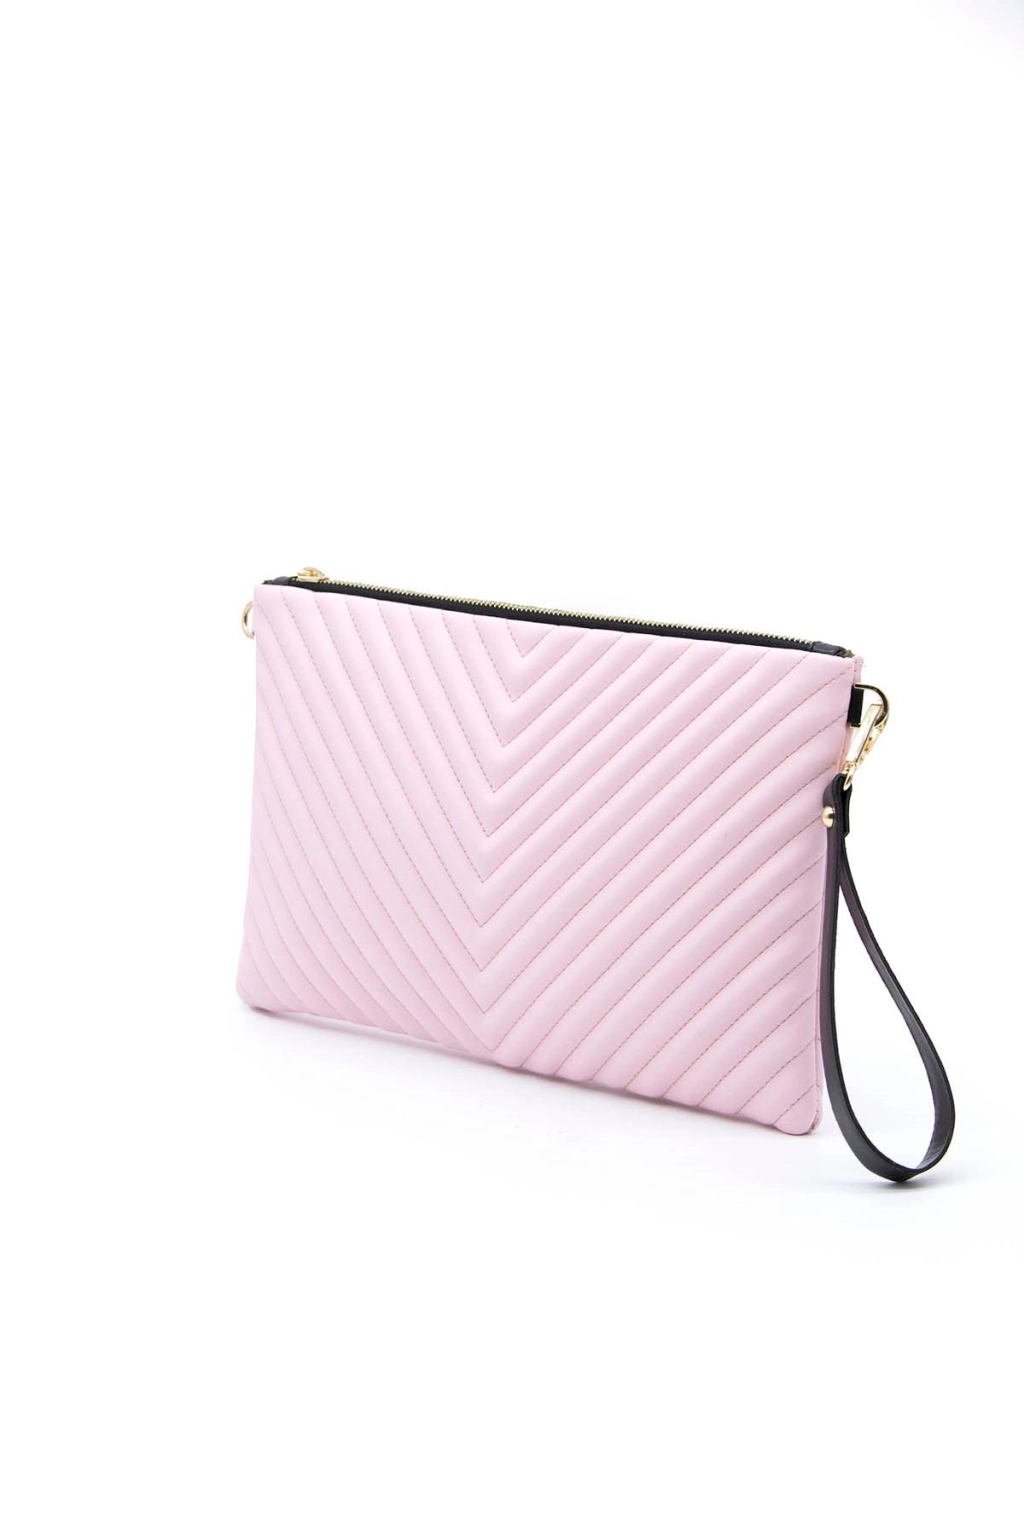 Дамска чанта тип плик в розов цвят SILVER&POLO